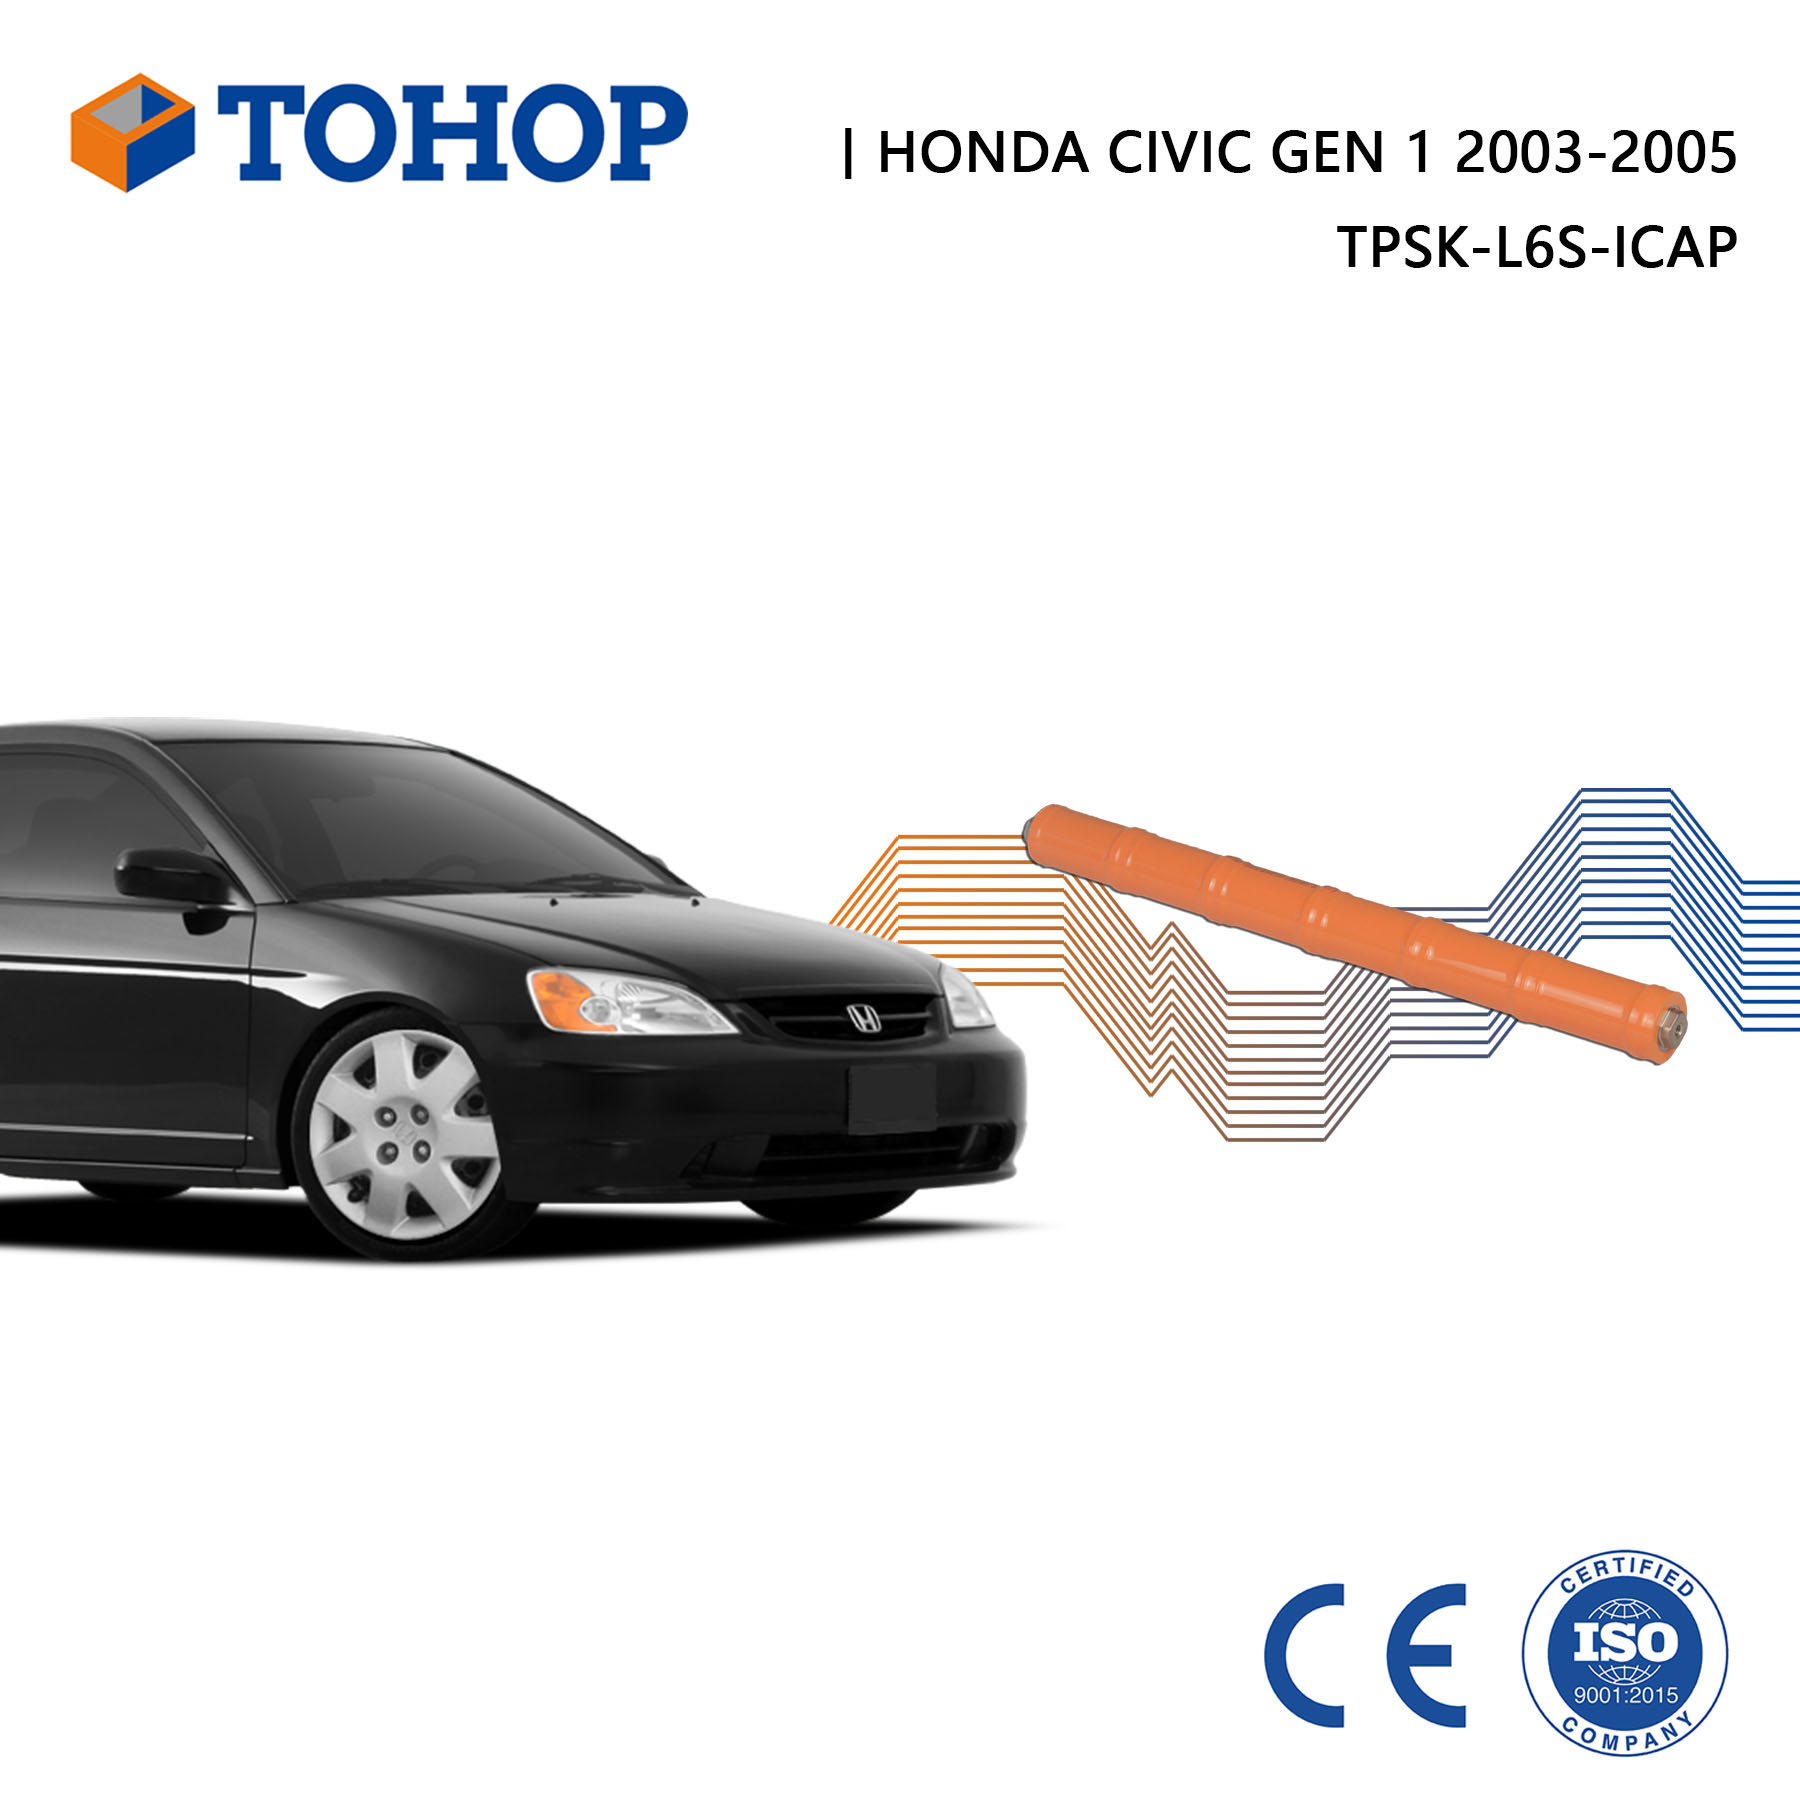 Civic Gen.1 2003 NUEVO 7.2V 6.5AH Batería híbrida para Honda